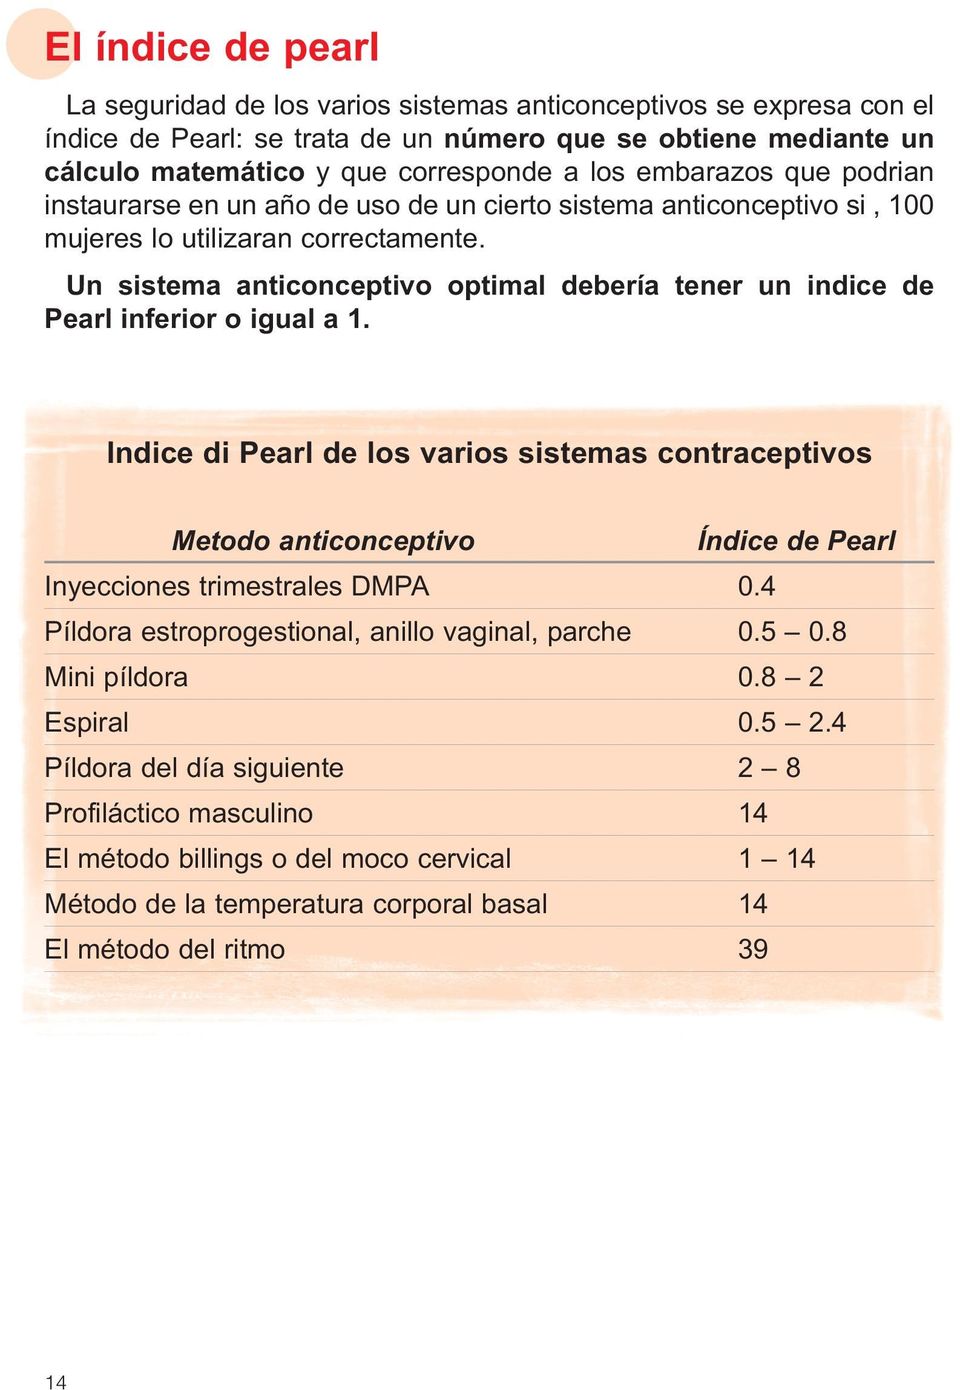 Un sistema anticonceptivo optimal debería tener un indice de Pearl inferior o igual a 1.